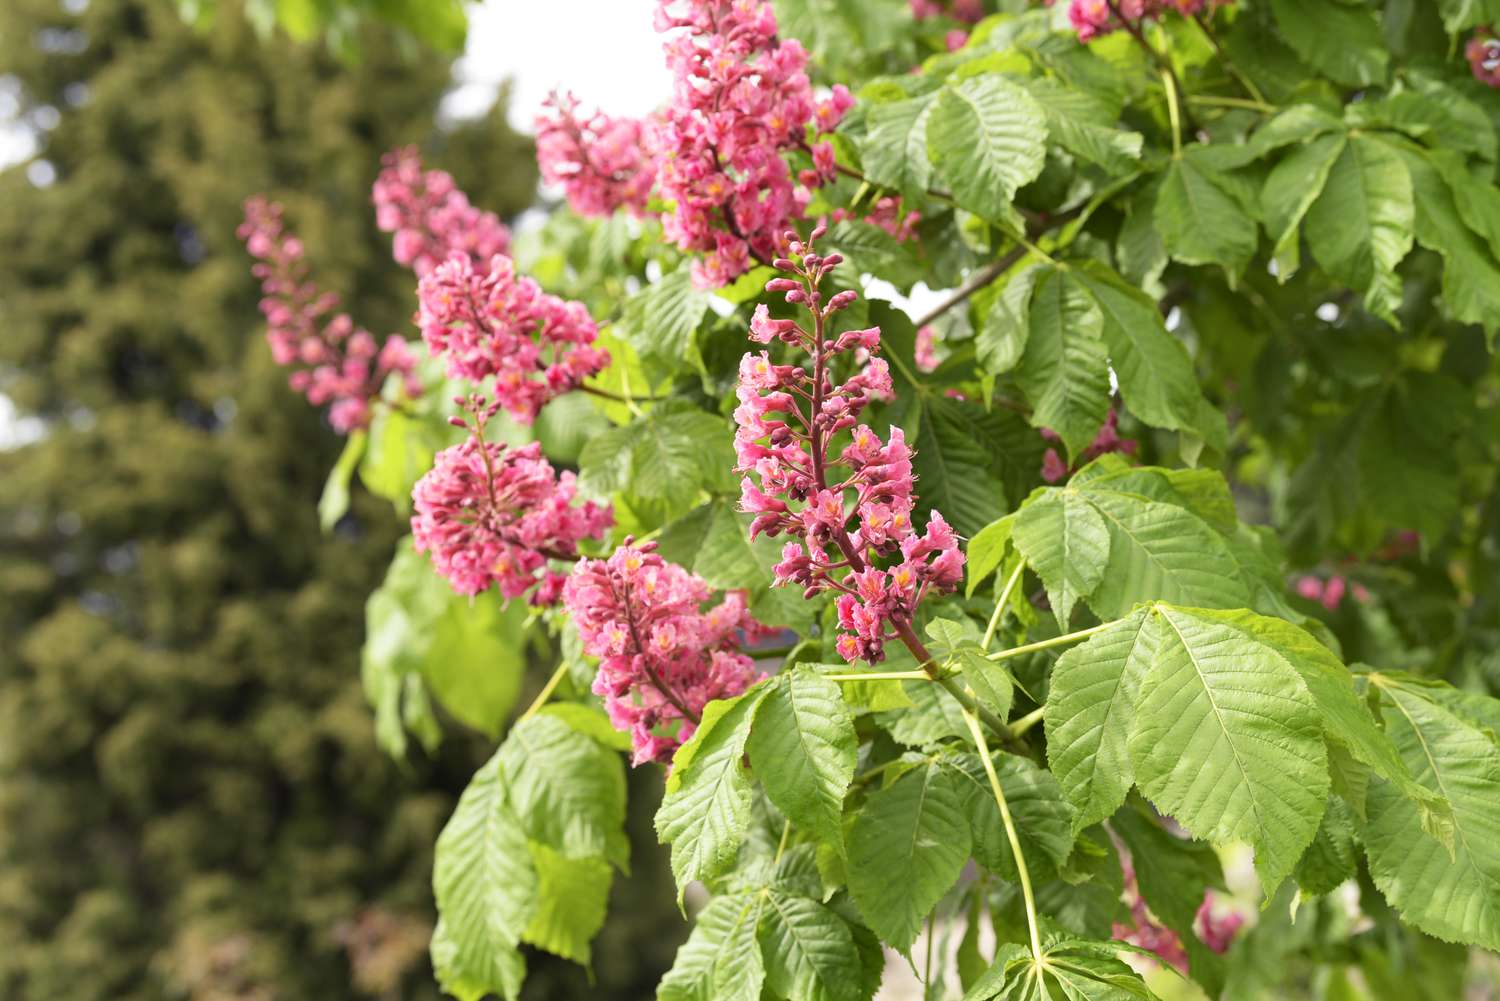 Galhos da árvore buckeye vermelha com grandes folhas com nervuras e hastes de flores rosa